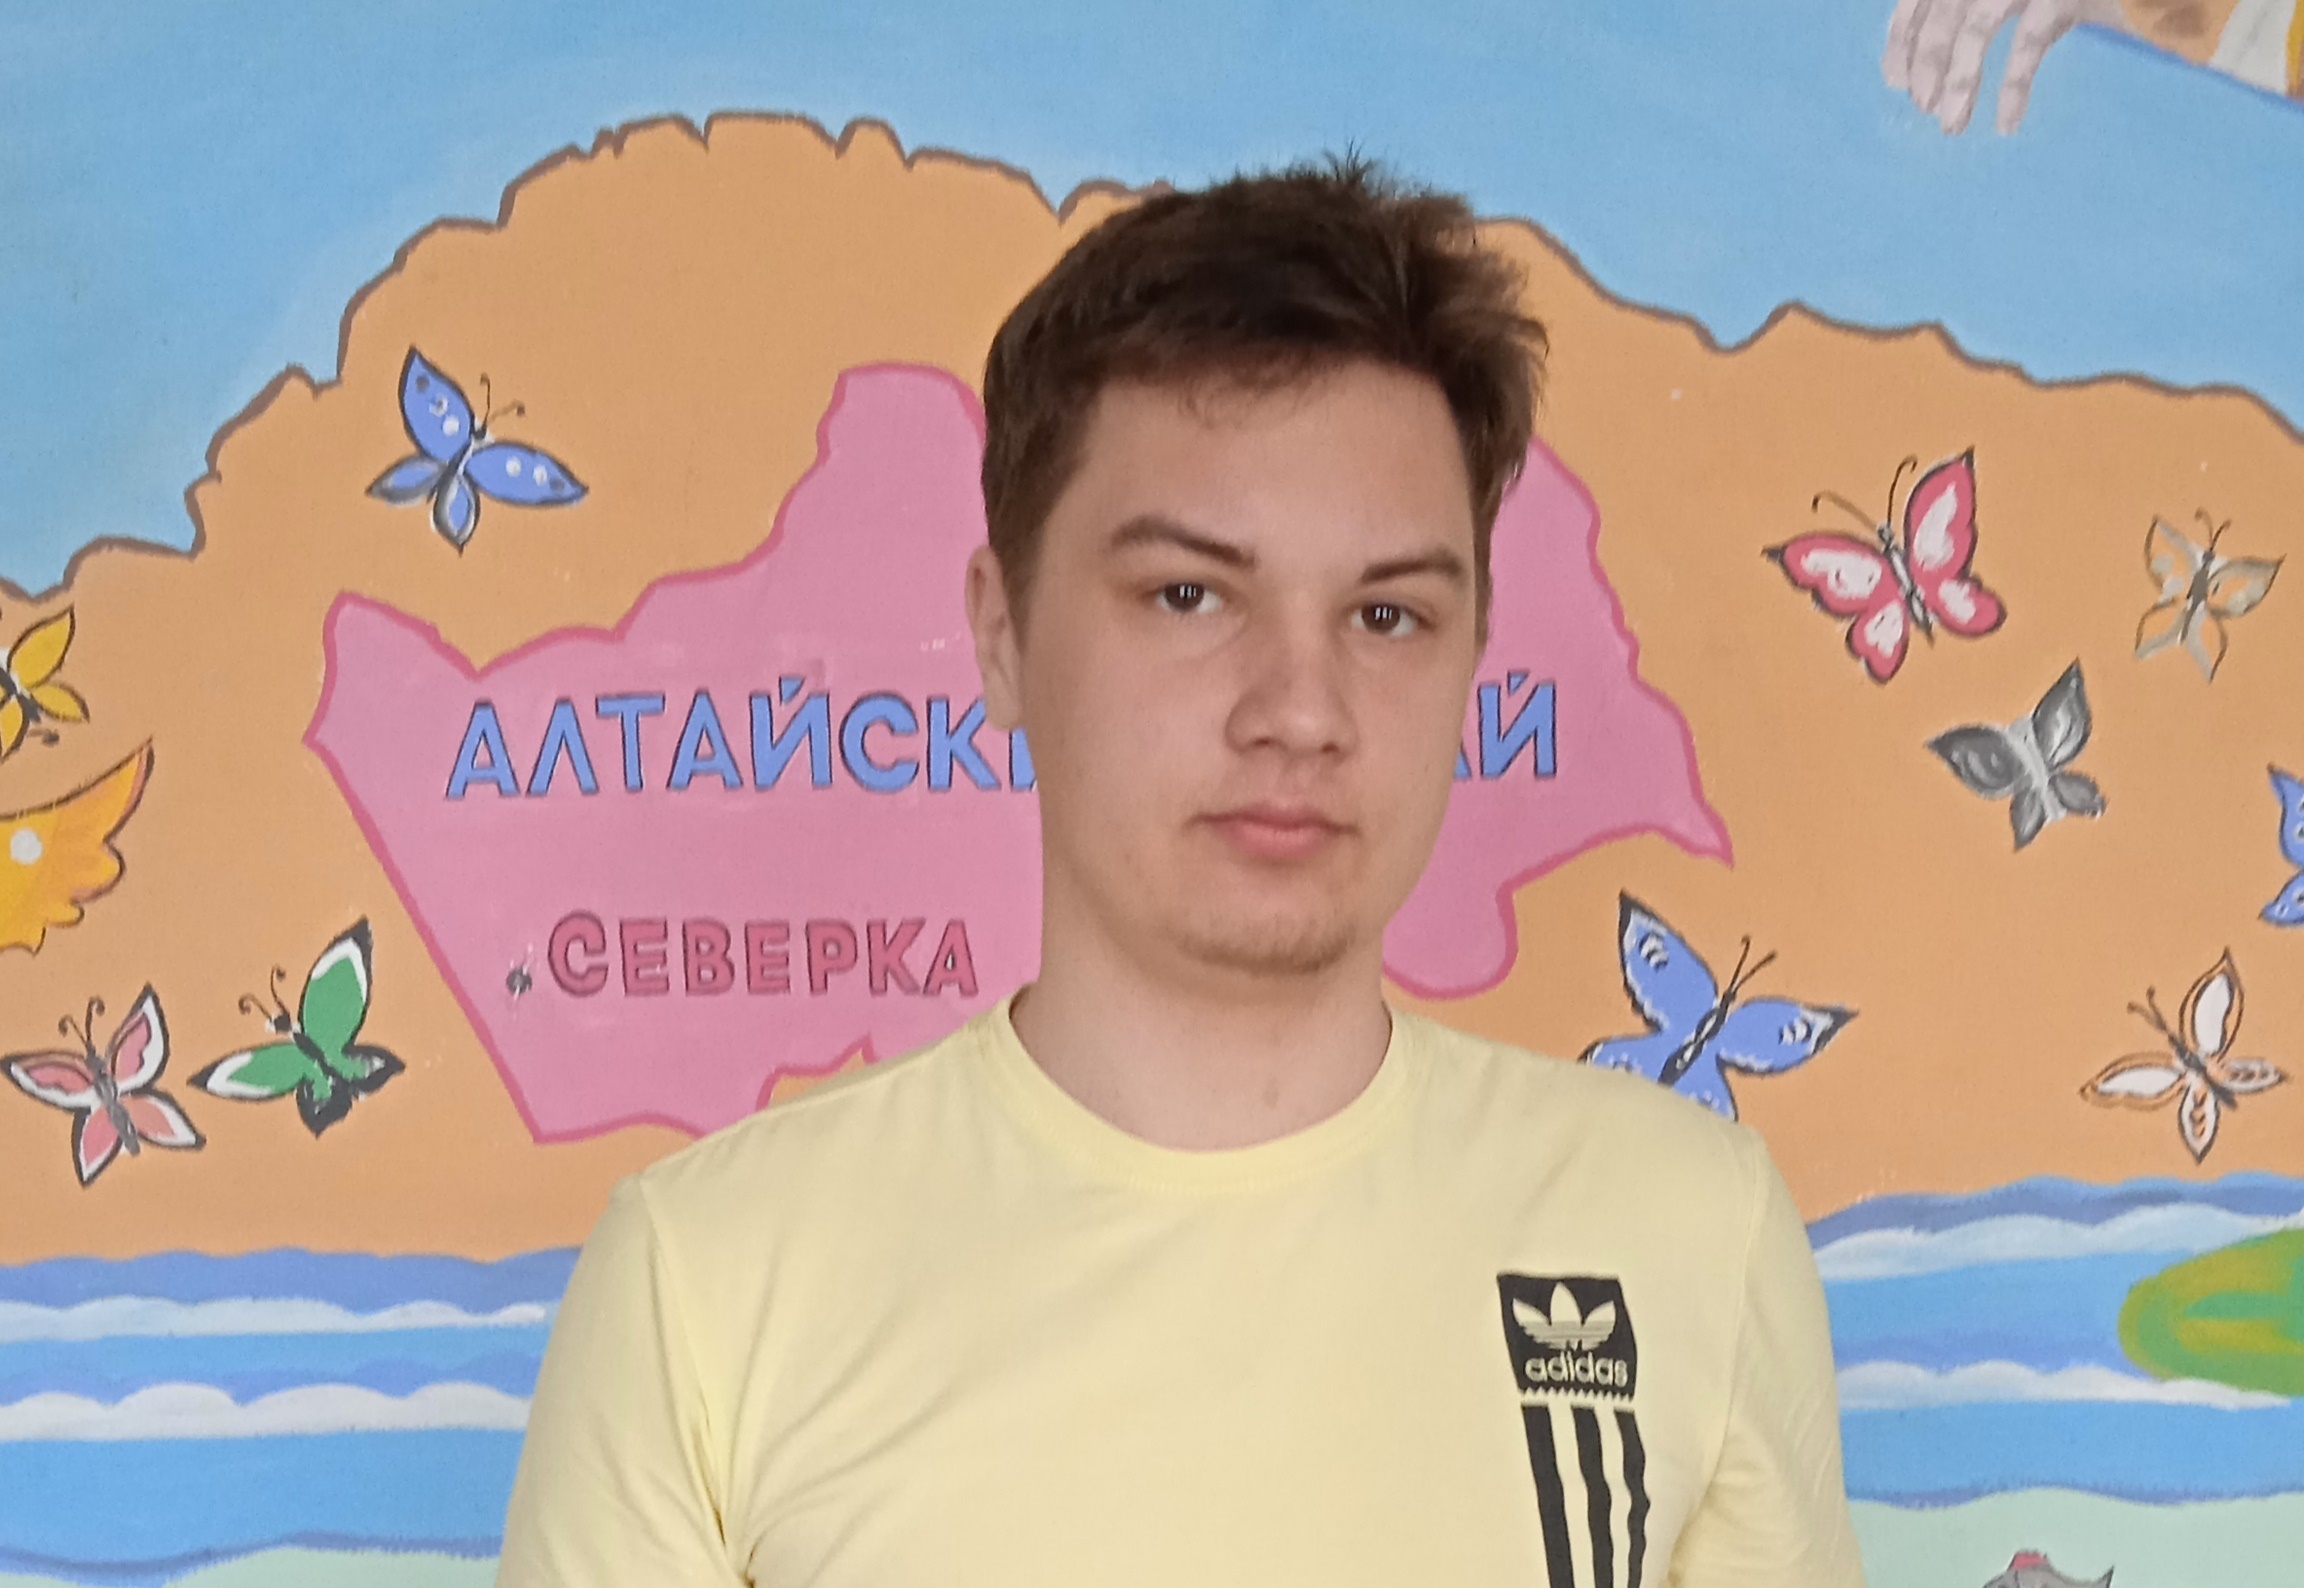 Кондратенко Иван, финалист Ползуновской олимпиады по математике.